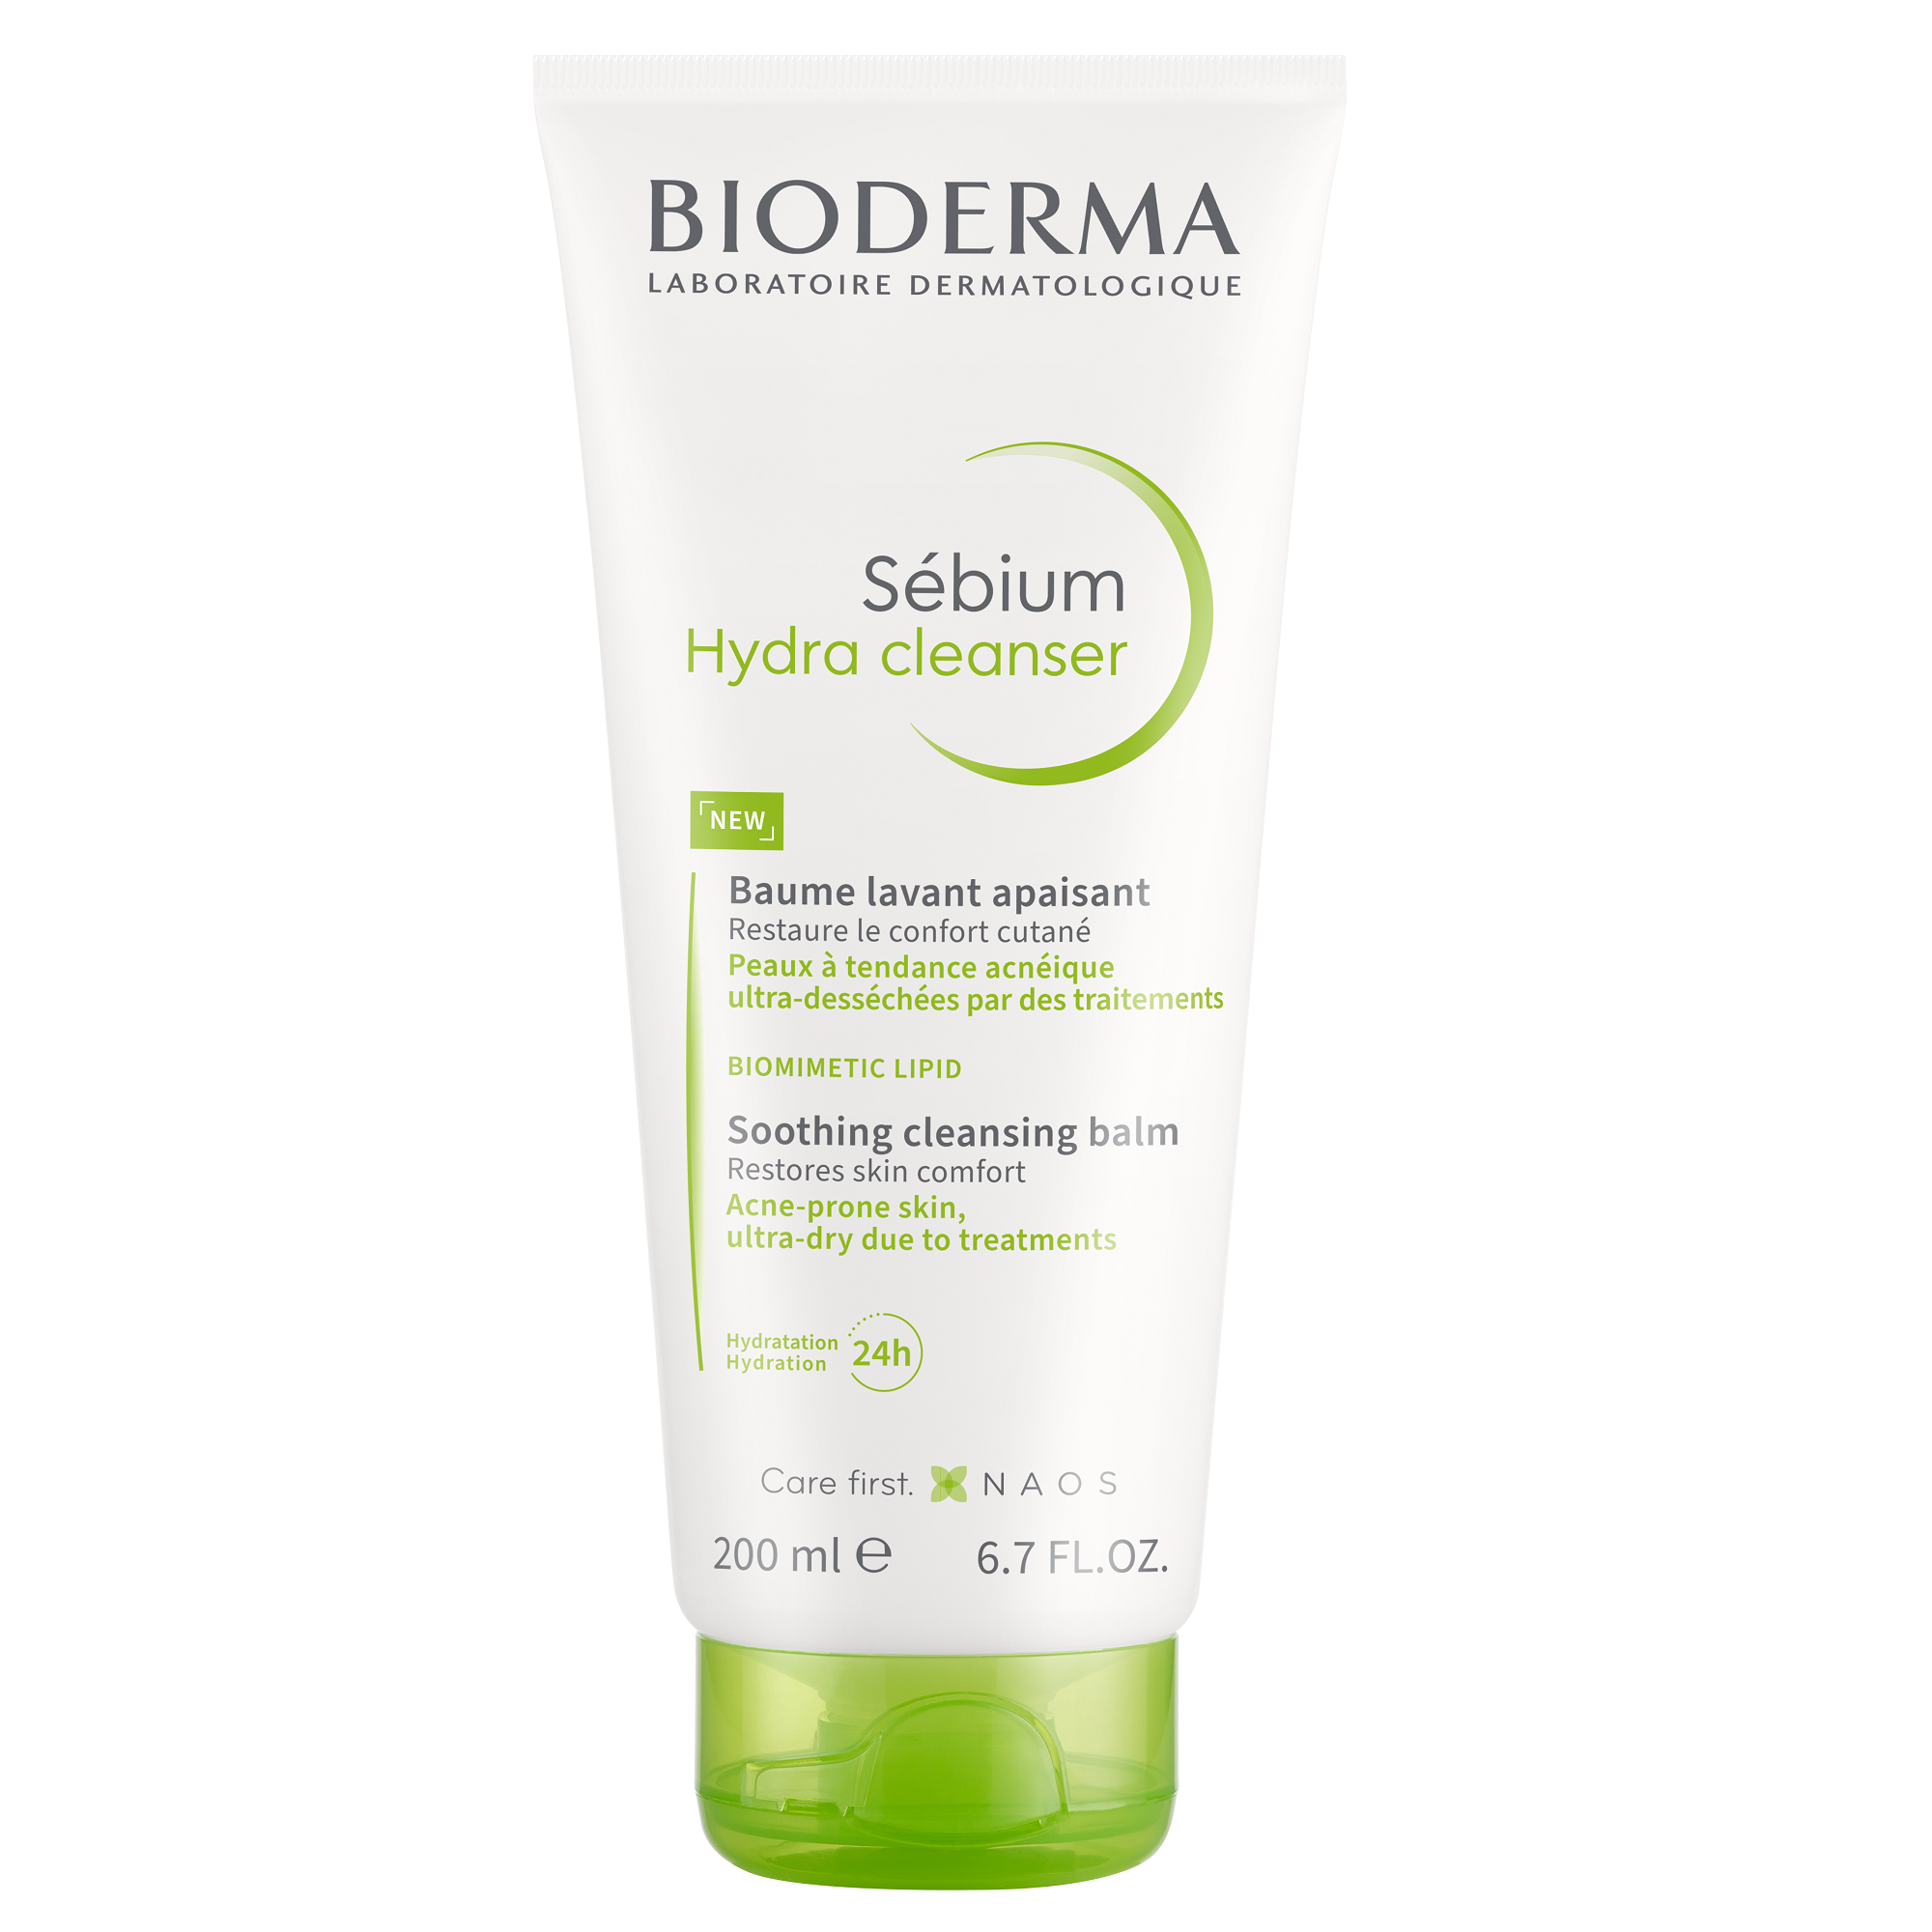 Balsam Sebium Hydra Cleanser, 200 ml, Bioderma